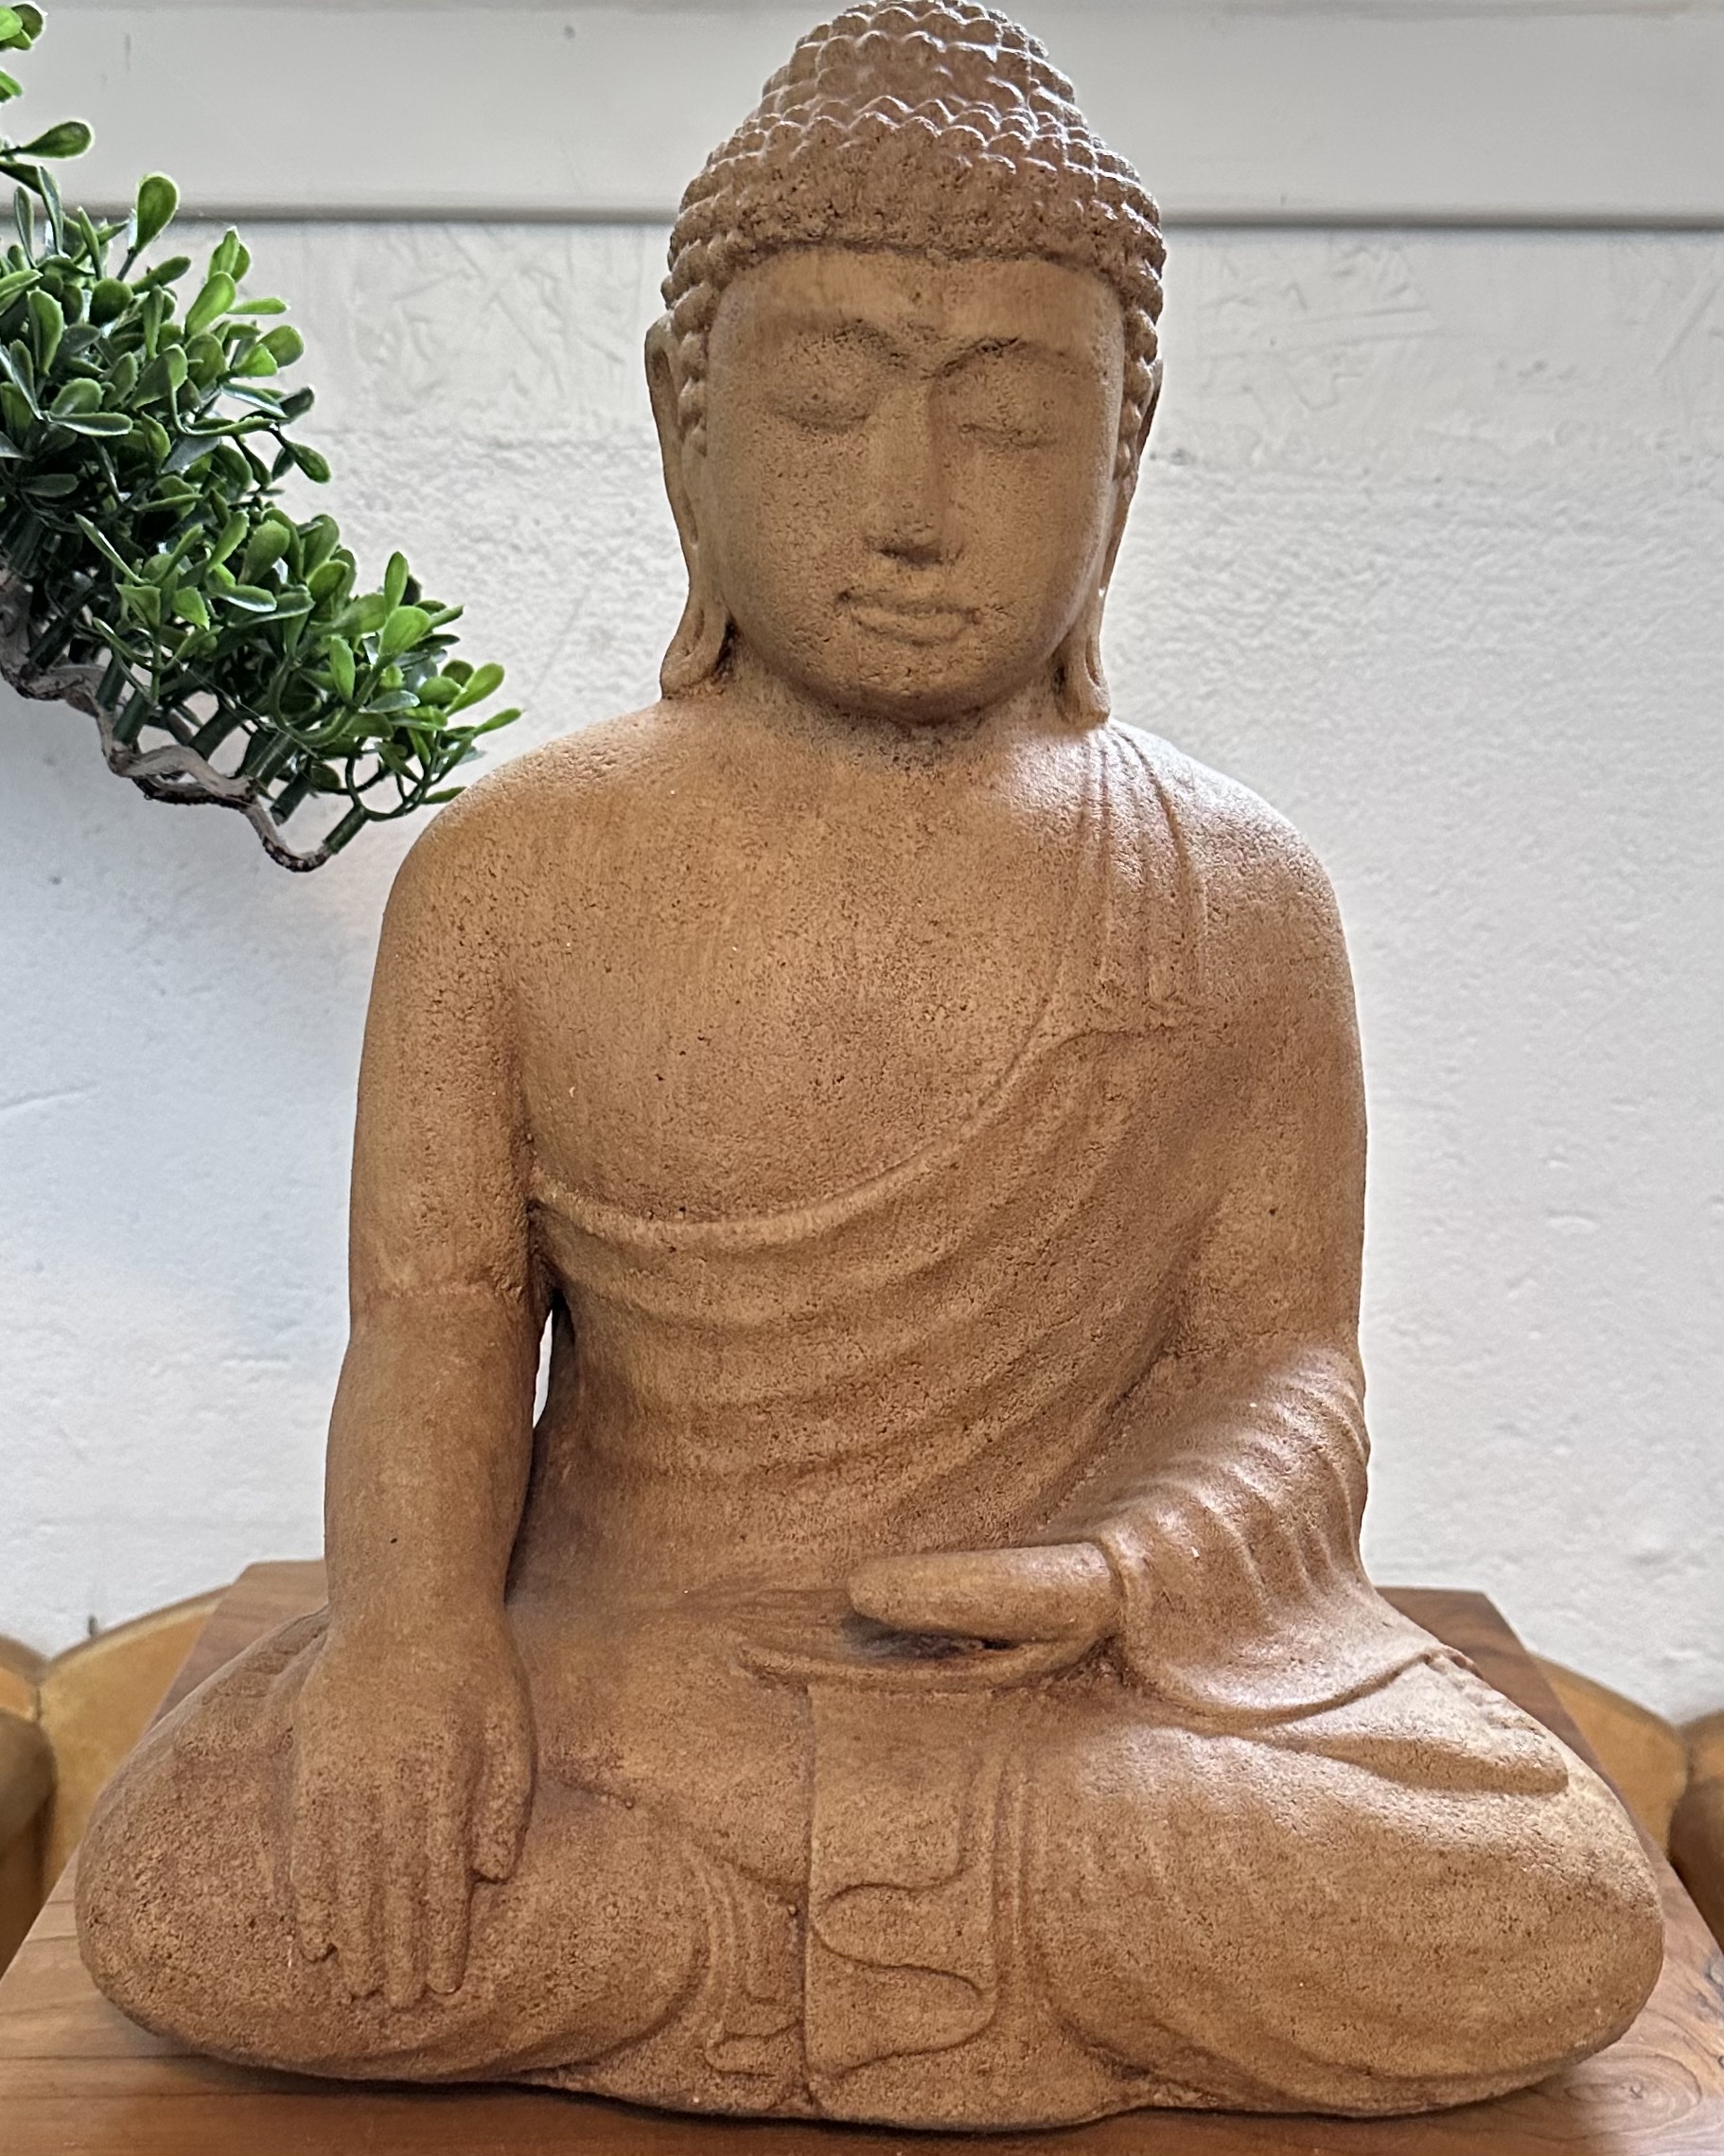 Saddharta Gautama